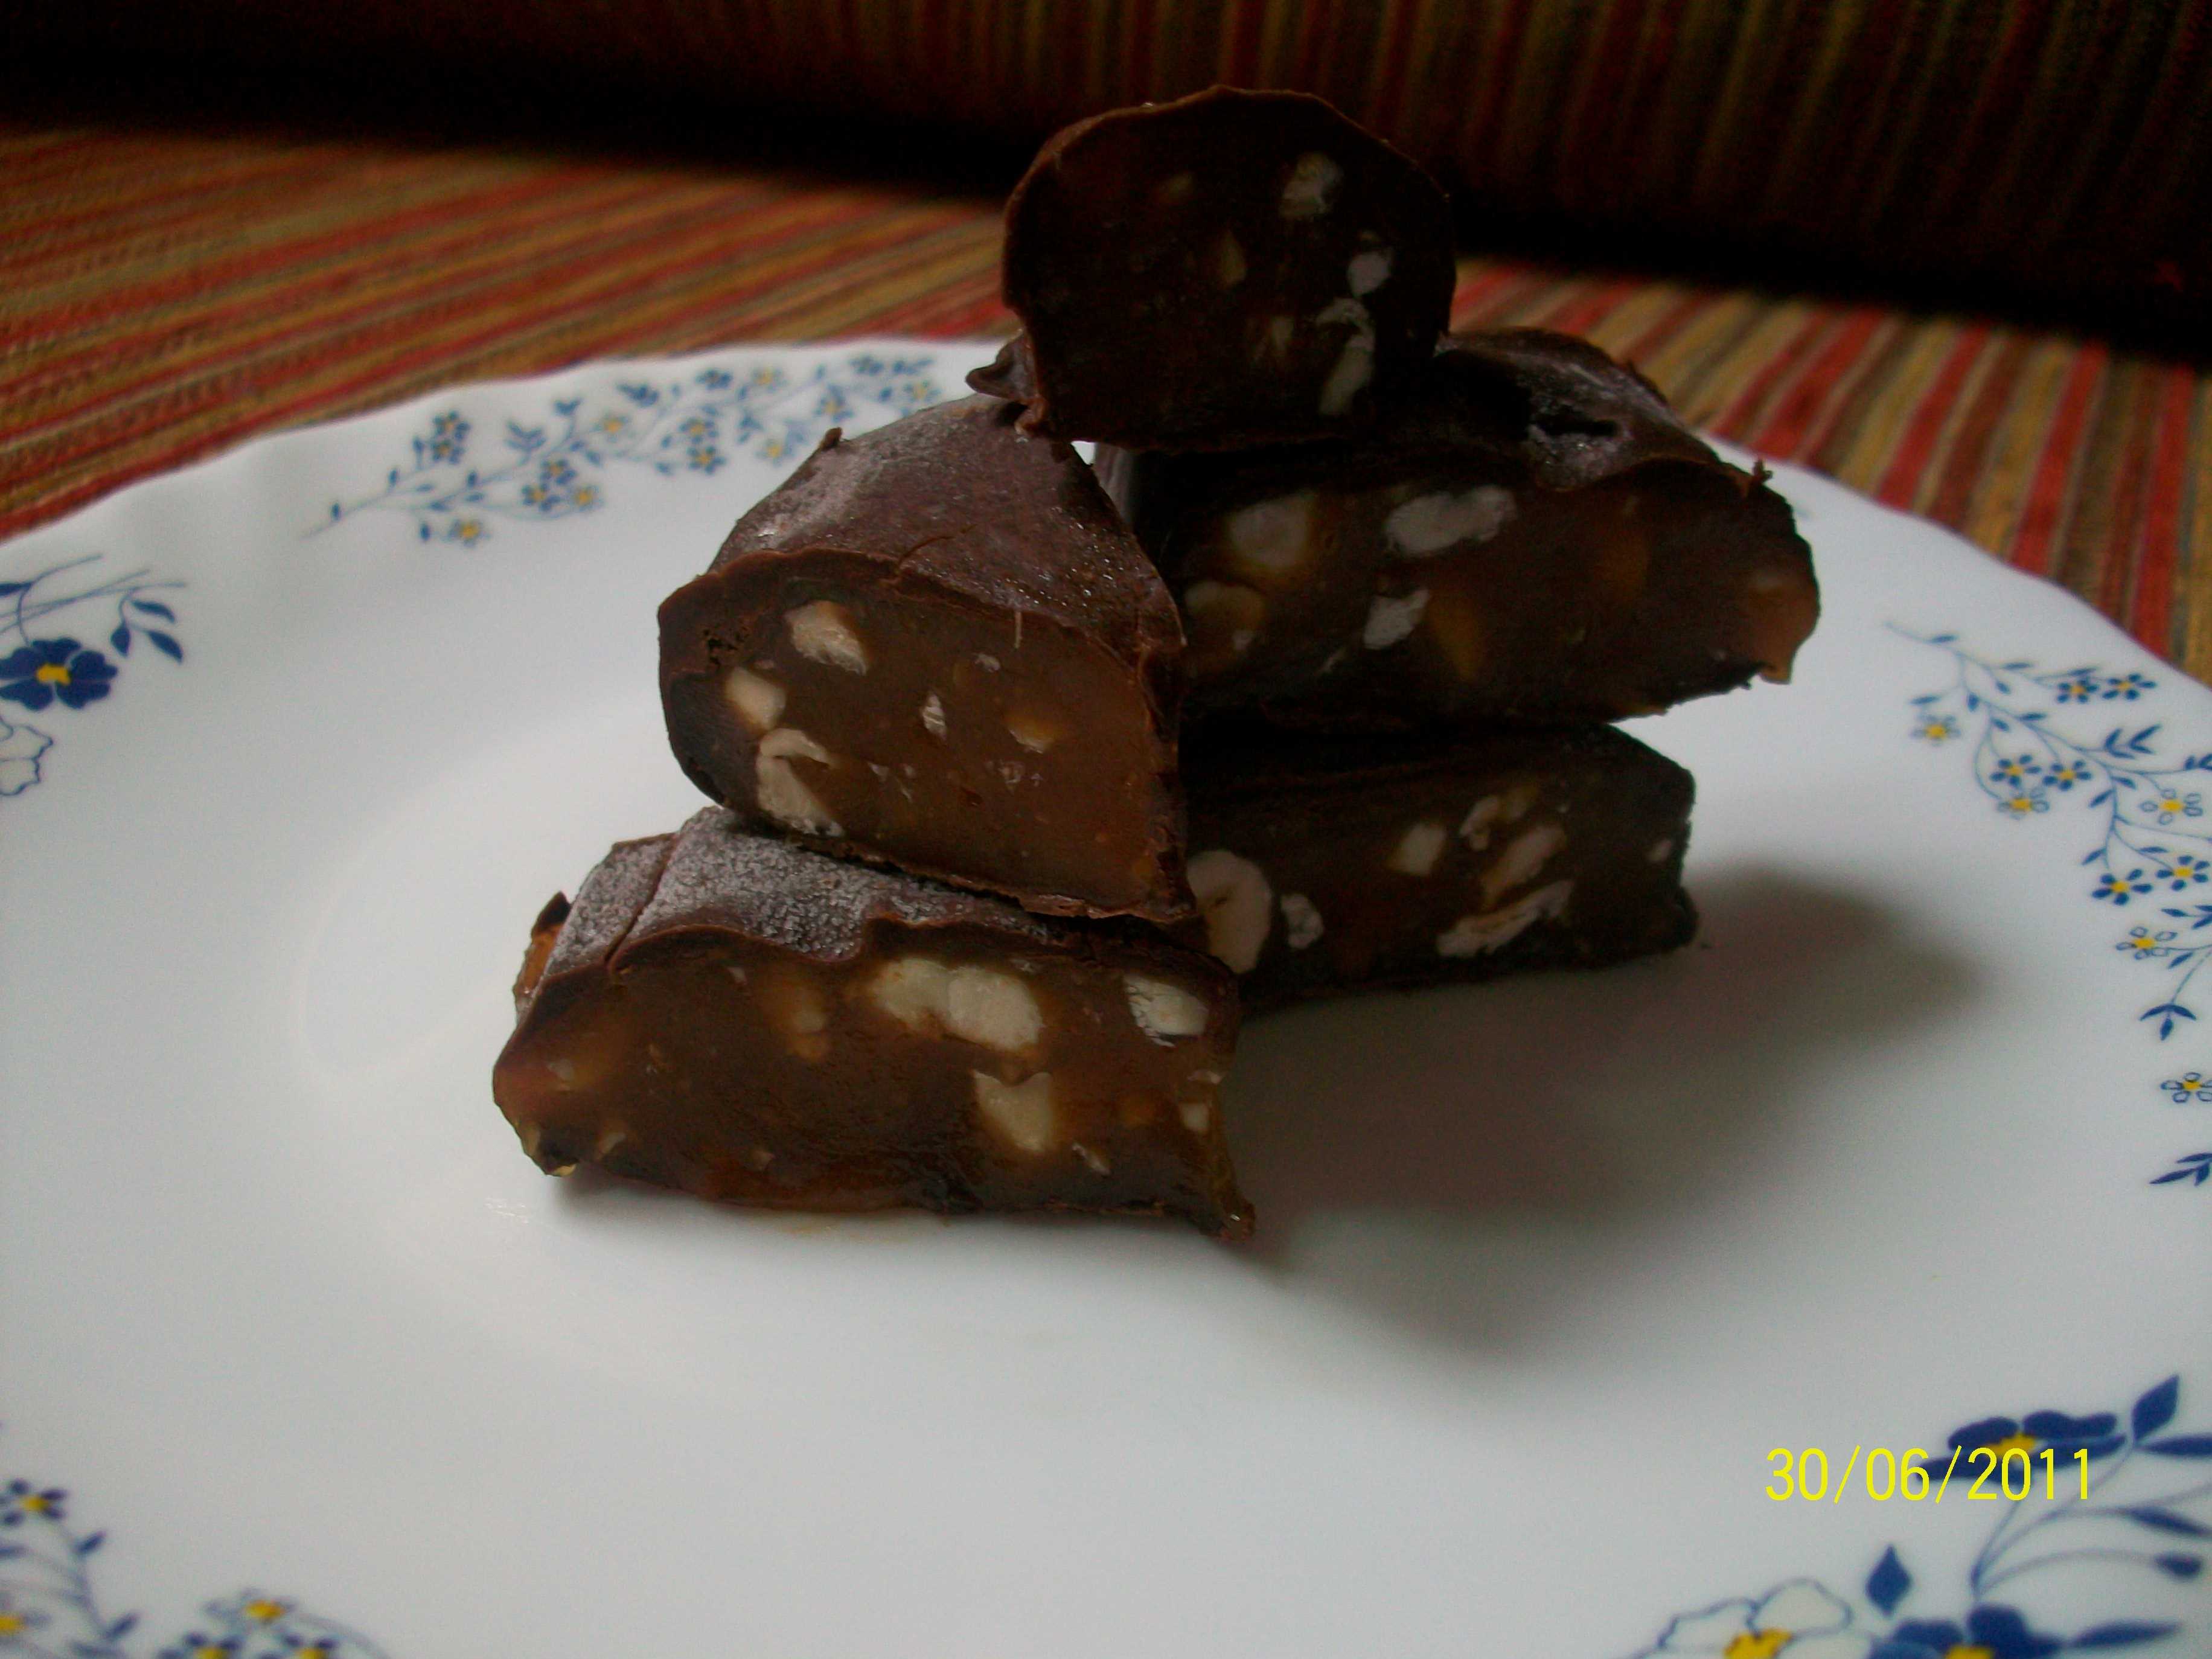 Batoane de caramel si alune invelite in ciocolata